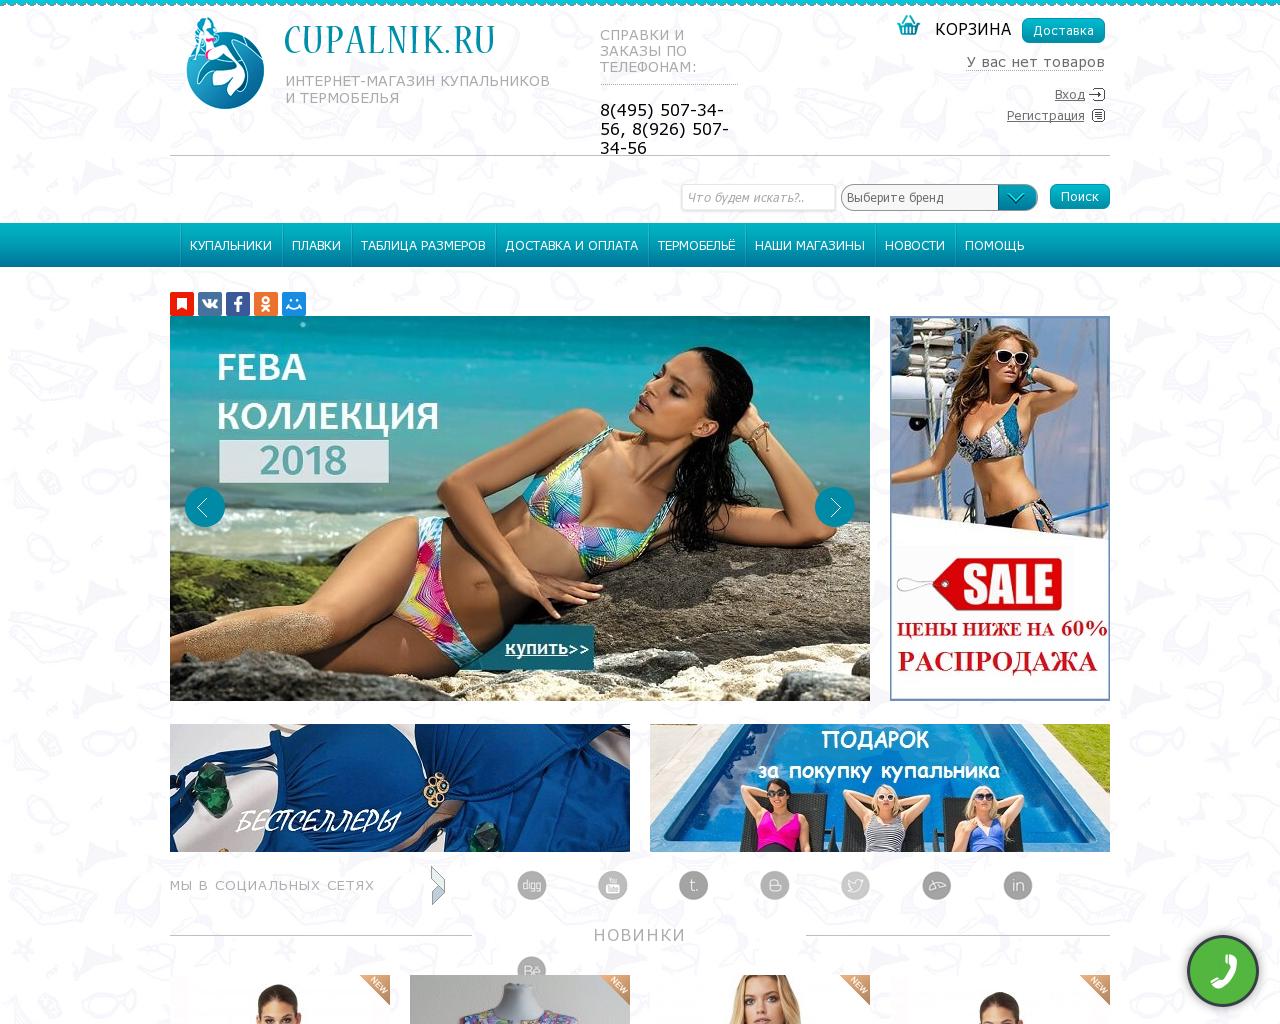 Изображение сайта cupalnik.ru в разрешении 1280x1024